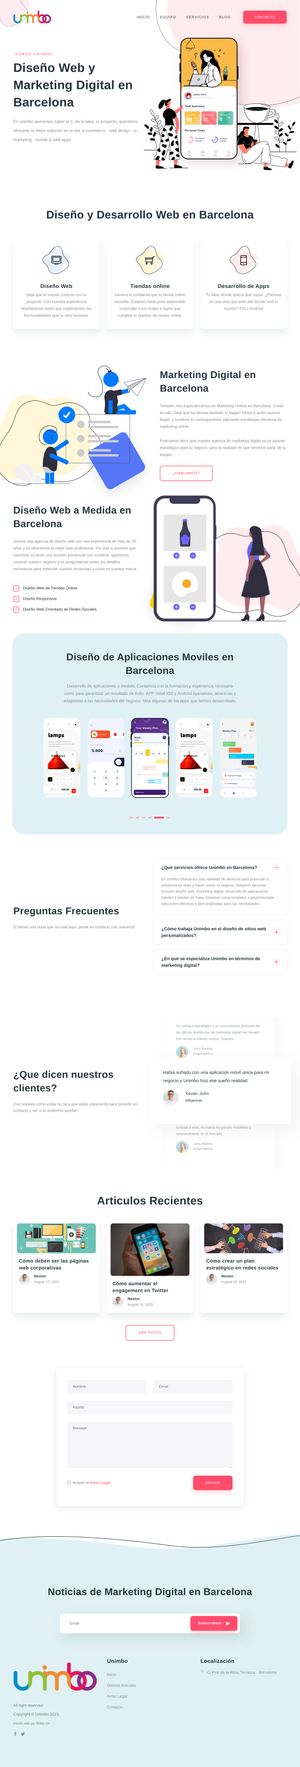 Ejemplo de diseño web completo en Hospitalet de Llobregat: Muestra la página web profesional que ha diseñado Ridaly para unimbo